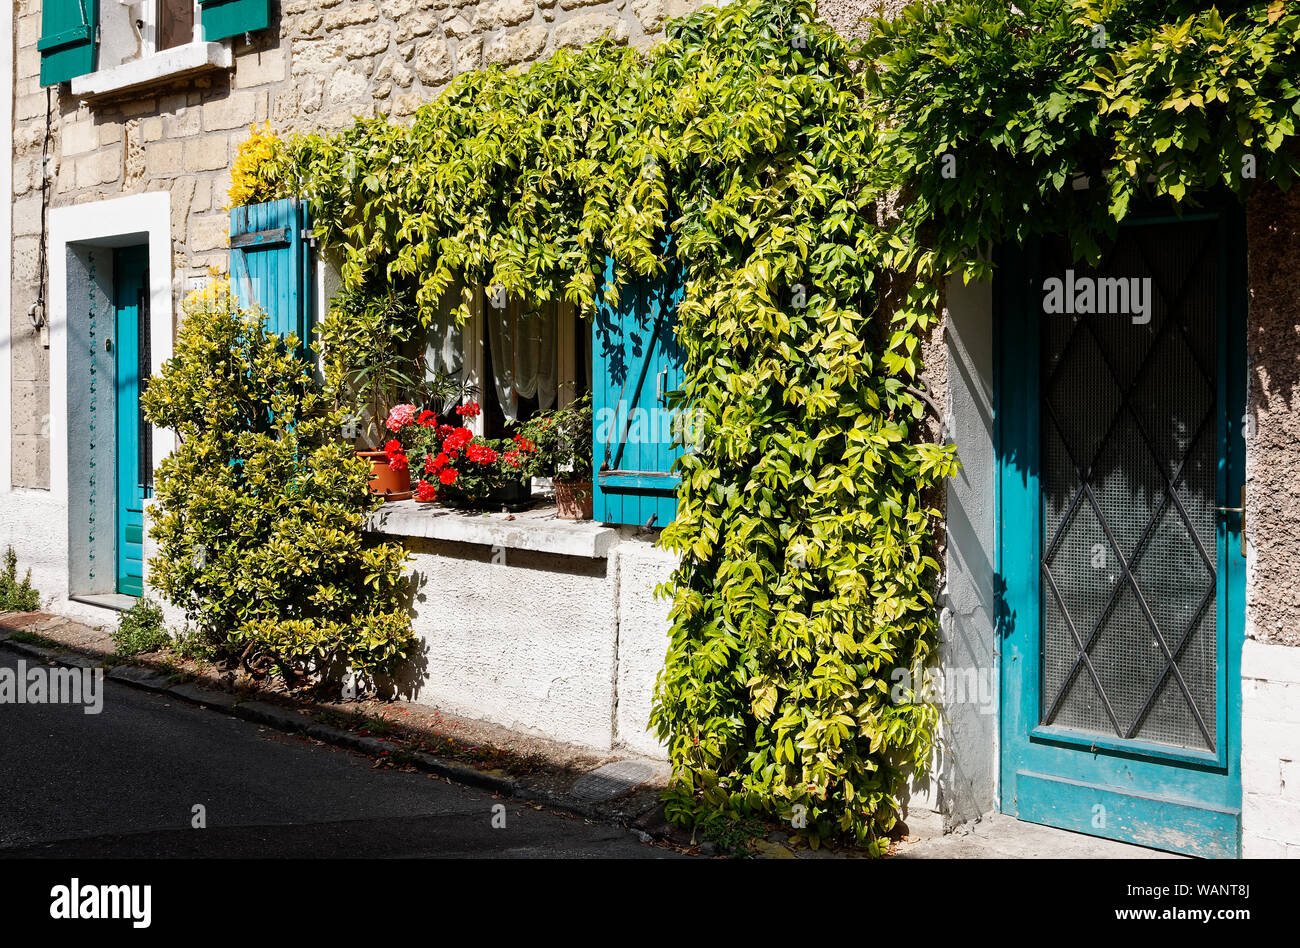 La fenêtre de la chambre verte, vignes entourant,volets et portes bleus, façade en pierre, plantes en pot, de la fenêtre, l'Europe, Conflans ; France ; été ; horizontal Banque D'Images